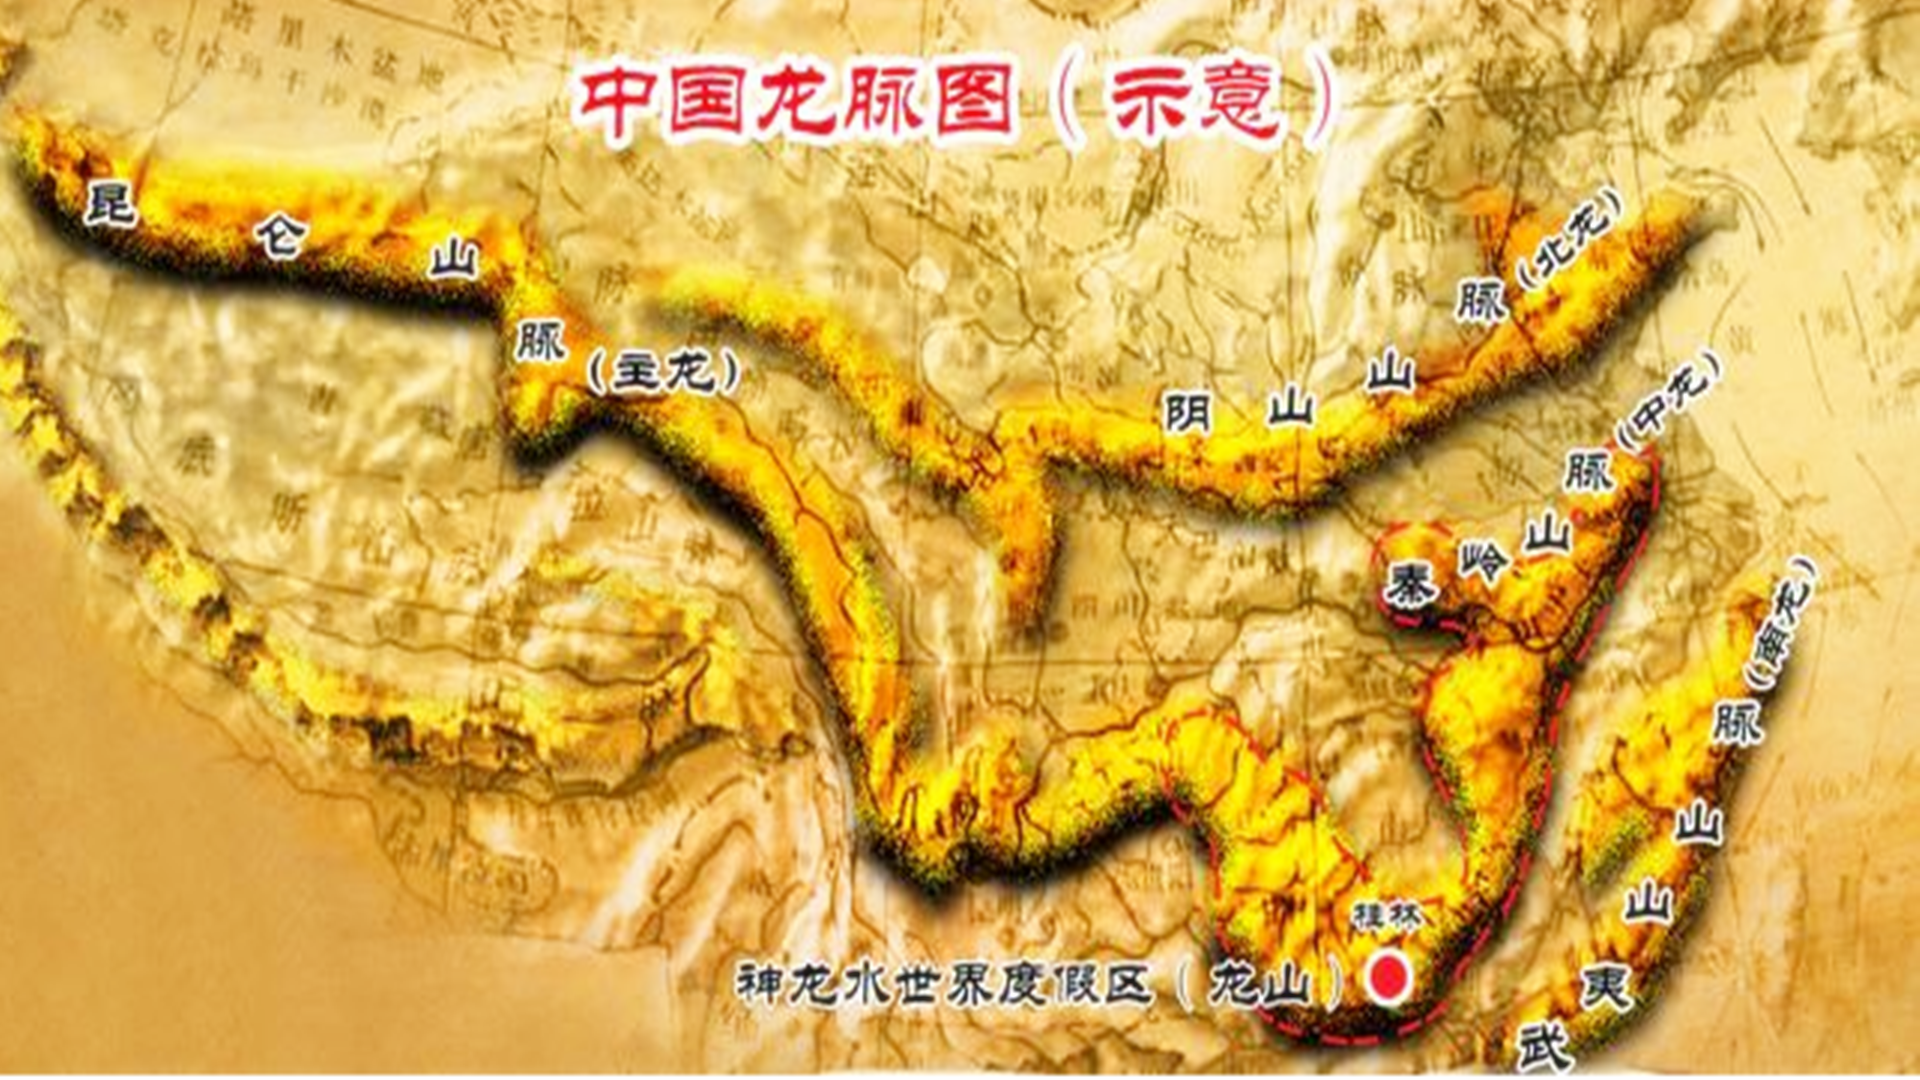 炎黄部落的龙脉位于黄河流域,地缘已不可考;夏禹的龙脉位于今四川汶川